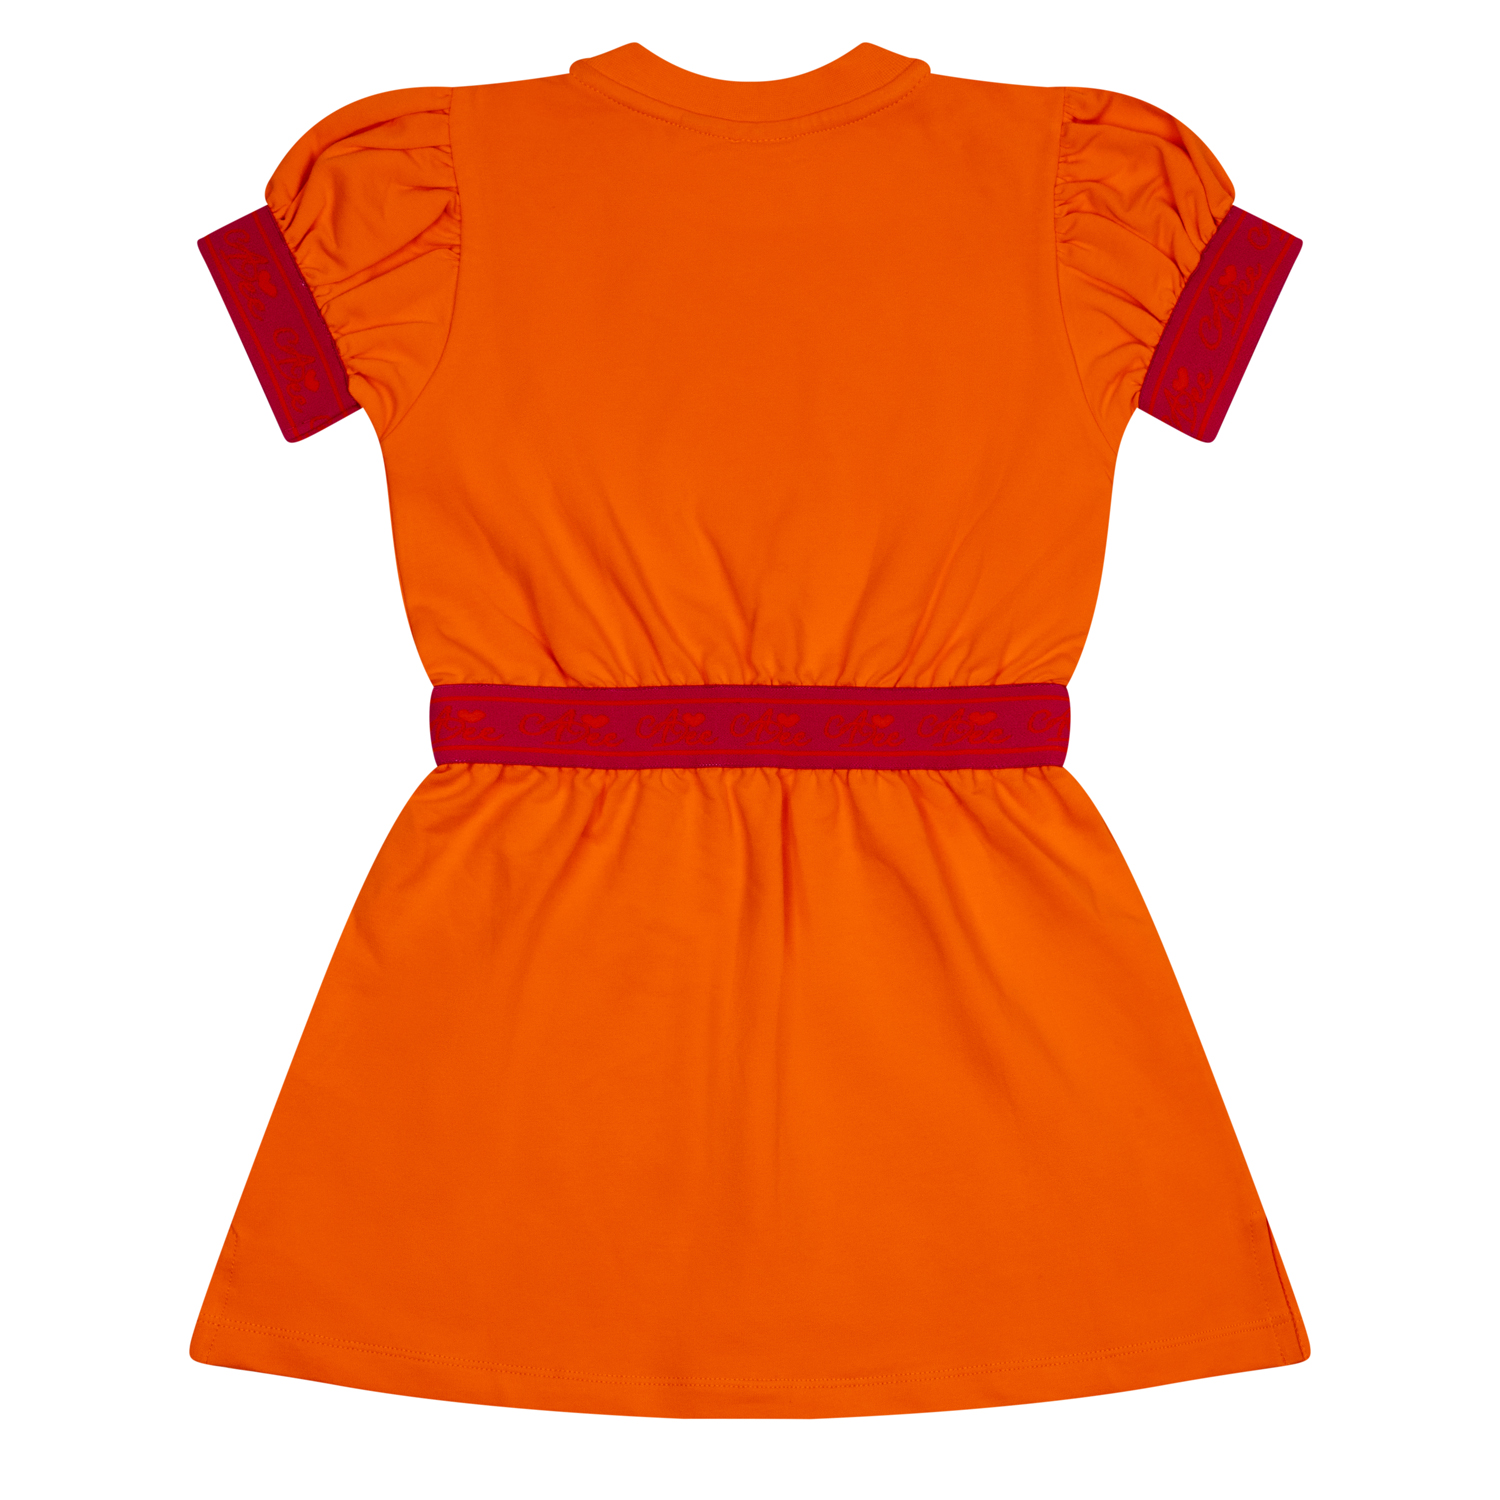 A’dee Millie oranje hot pink jurk met designs achterkant